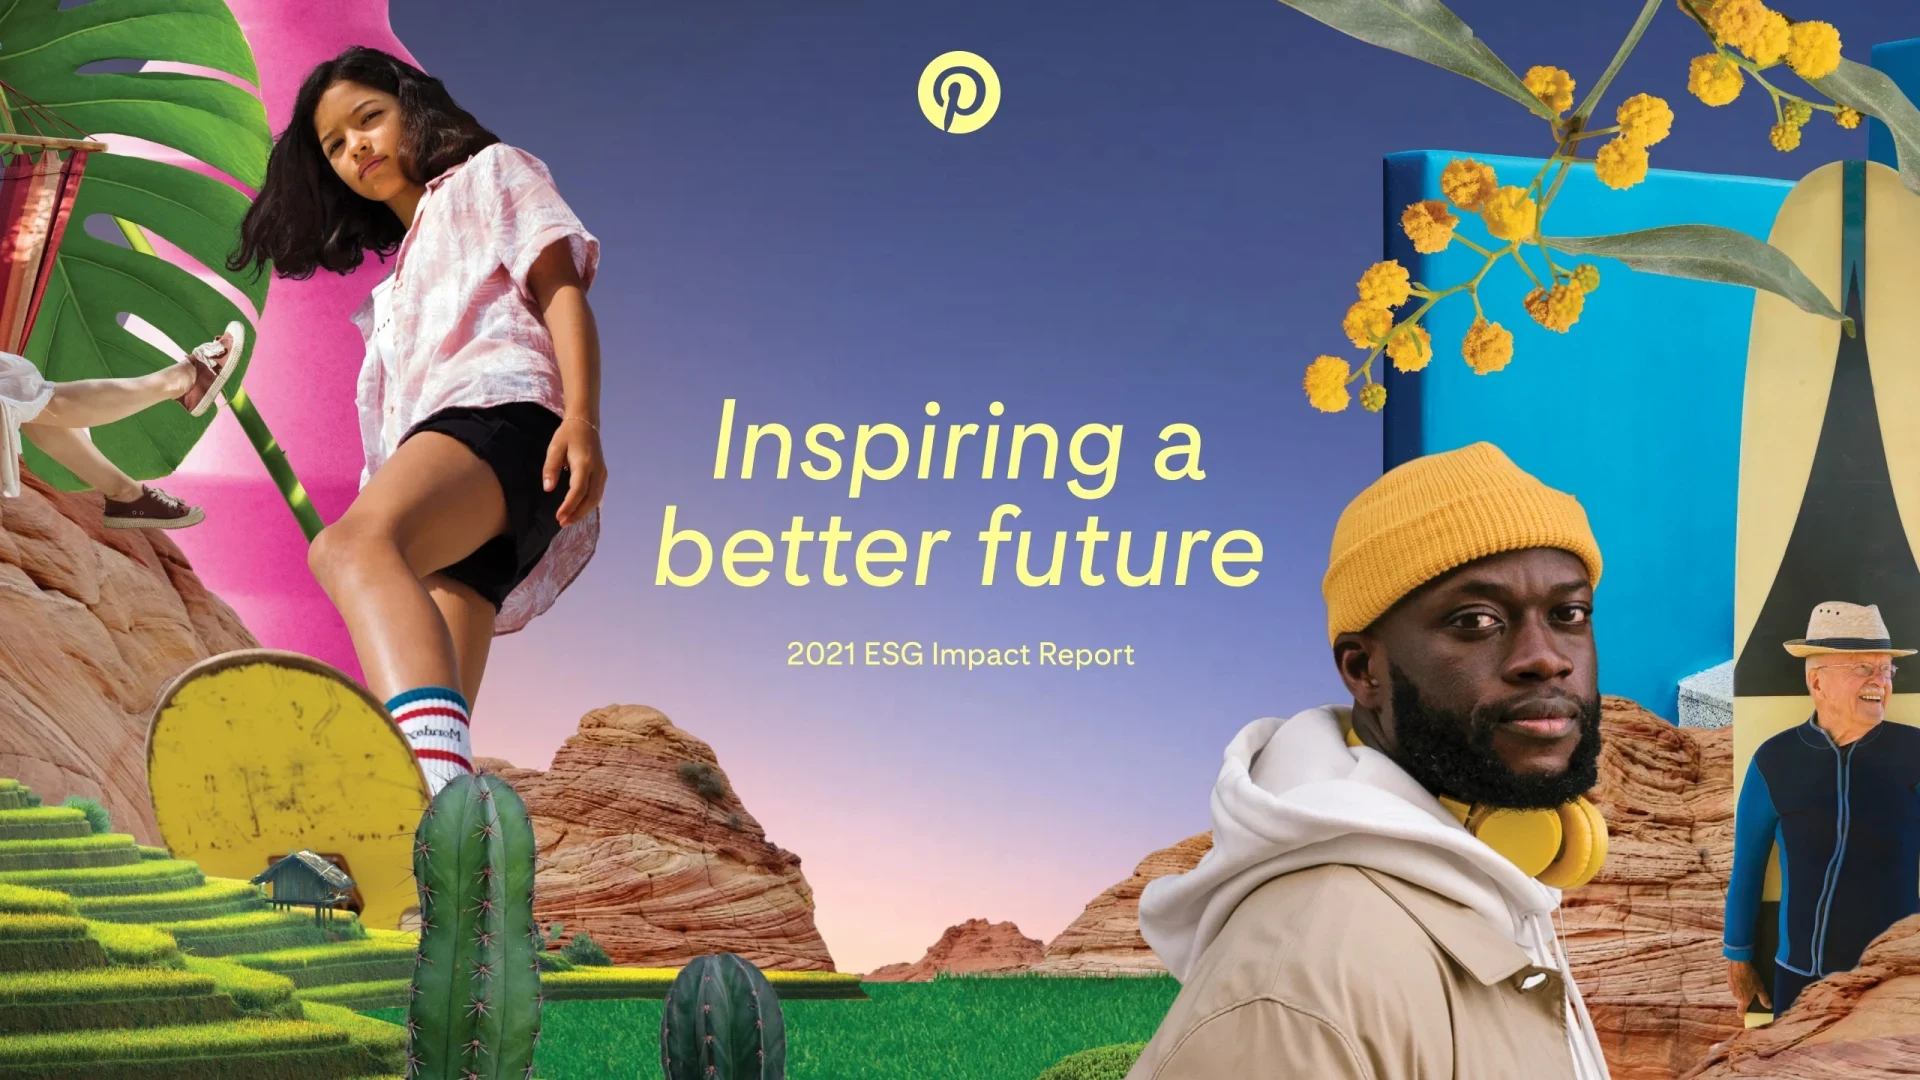 Pinterest にインスパイアされた画像のカラフルなコラージュの中心に、「Inspiring a better future」という言葉が表示されています